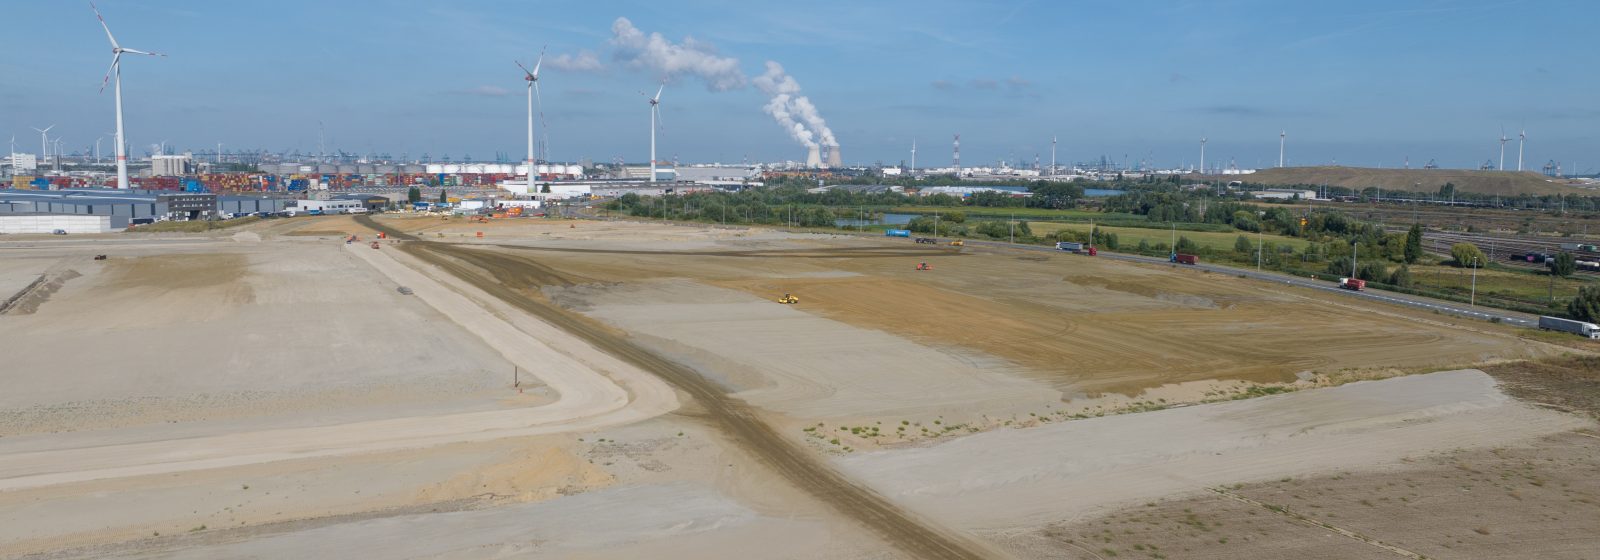 20221104, Antwerpen - Het NextGen district in de haven van Antwerpen in 2022